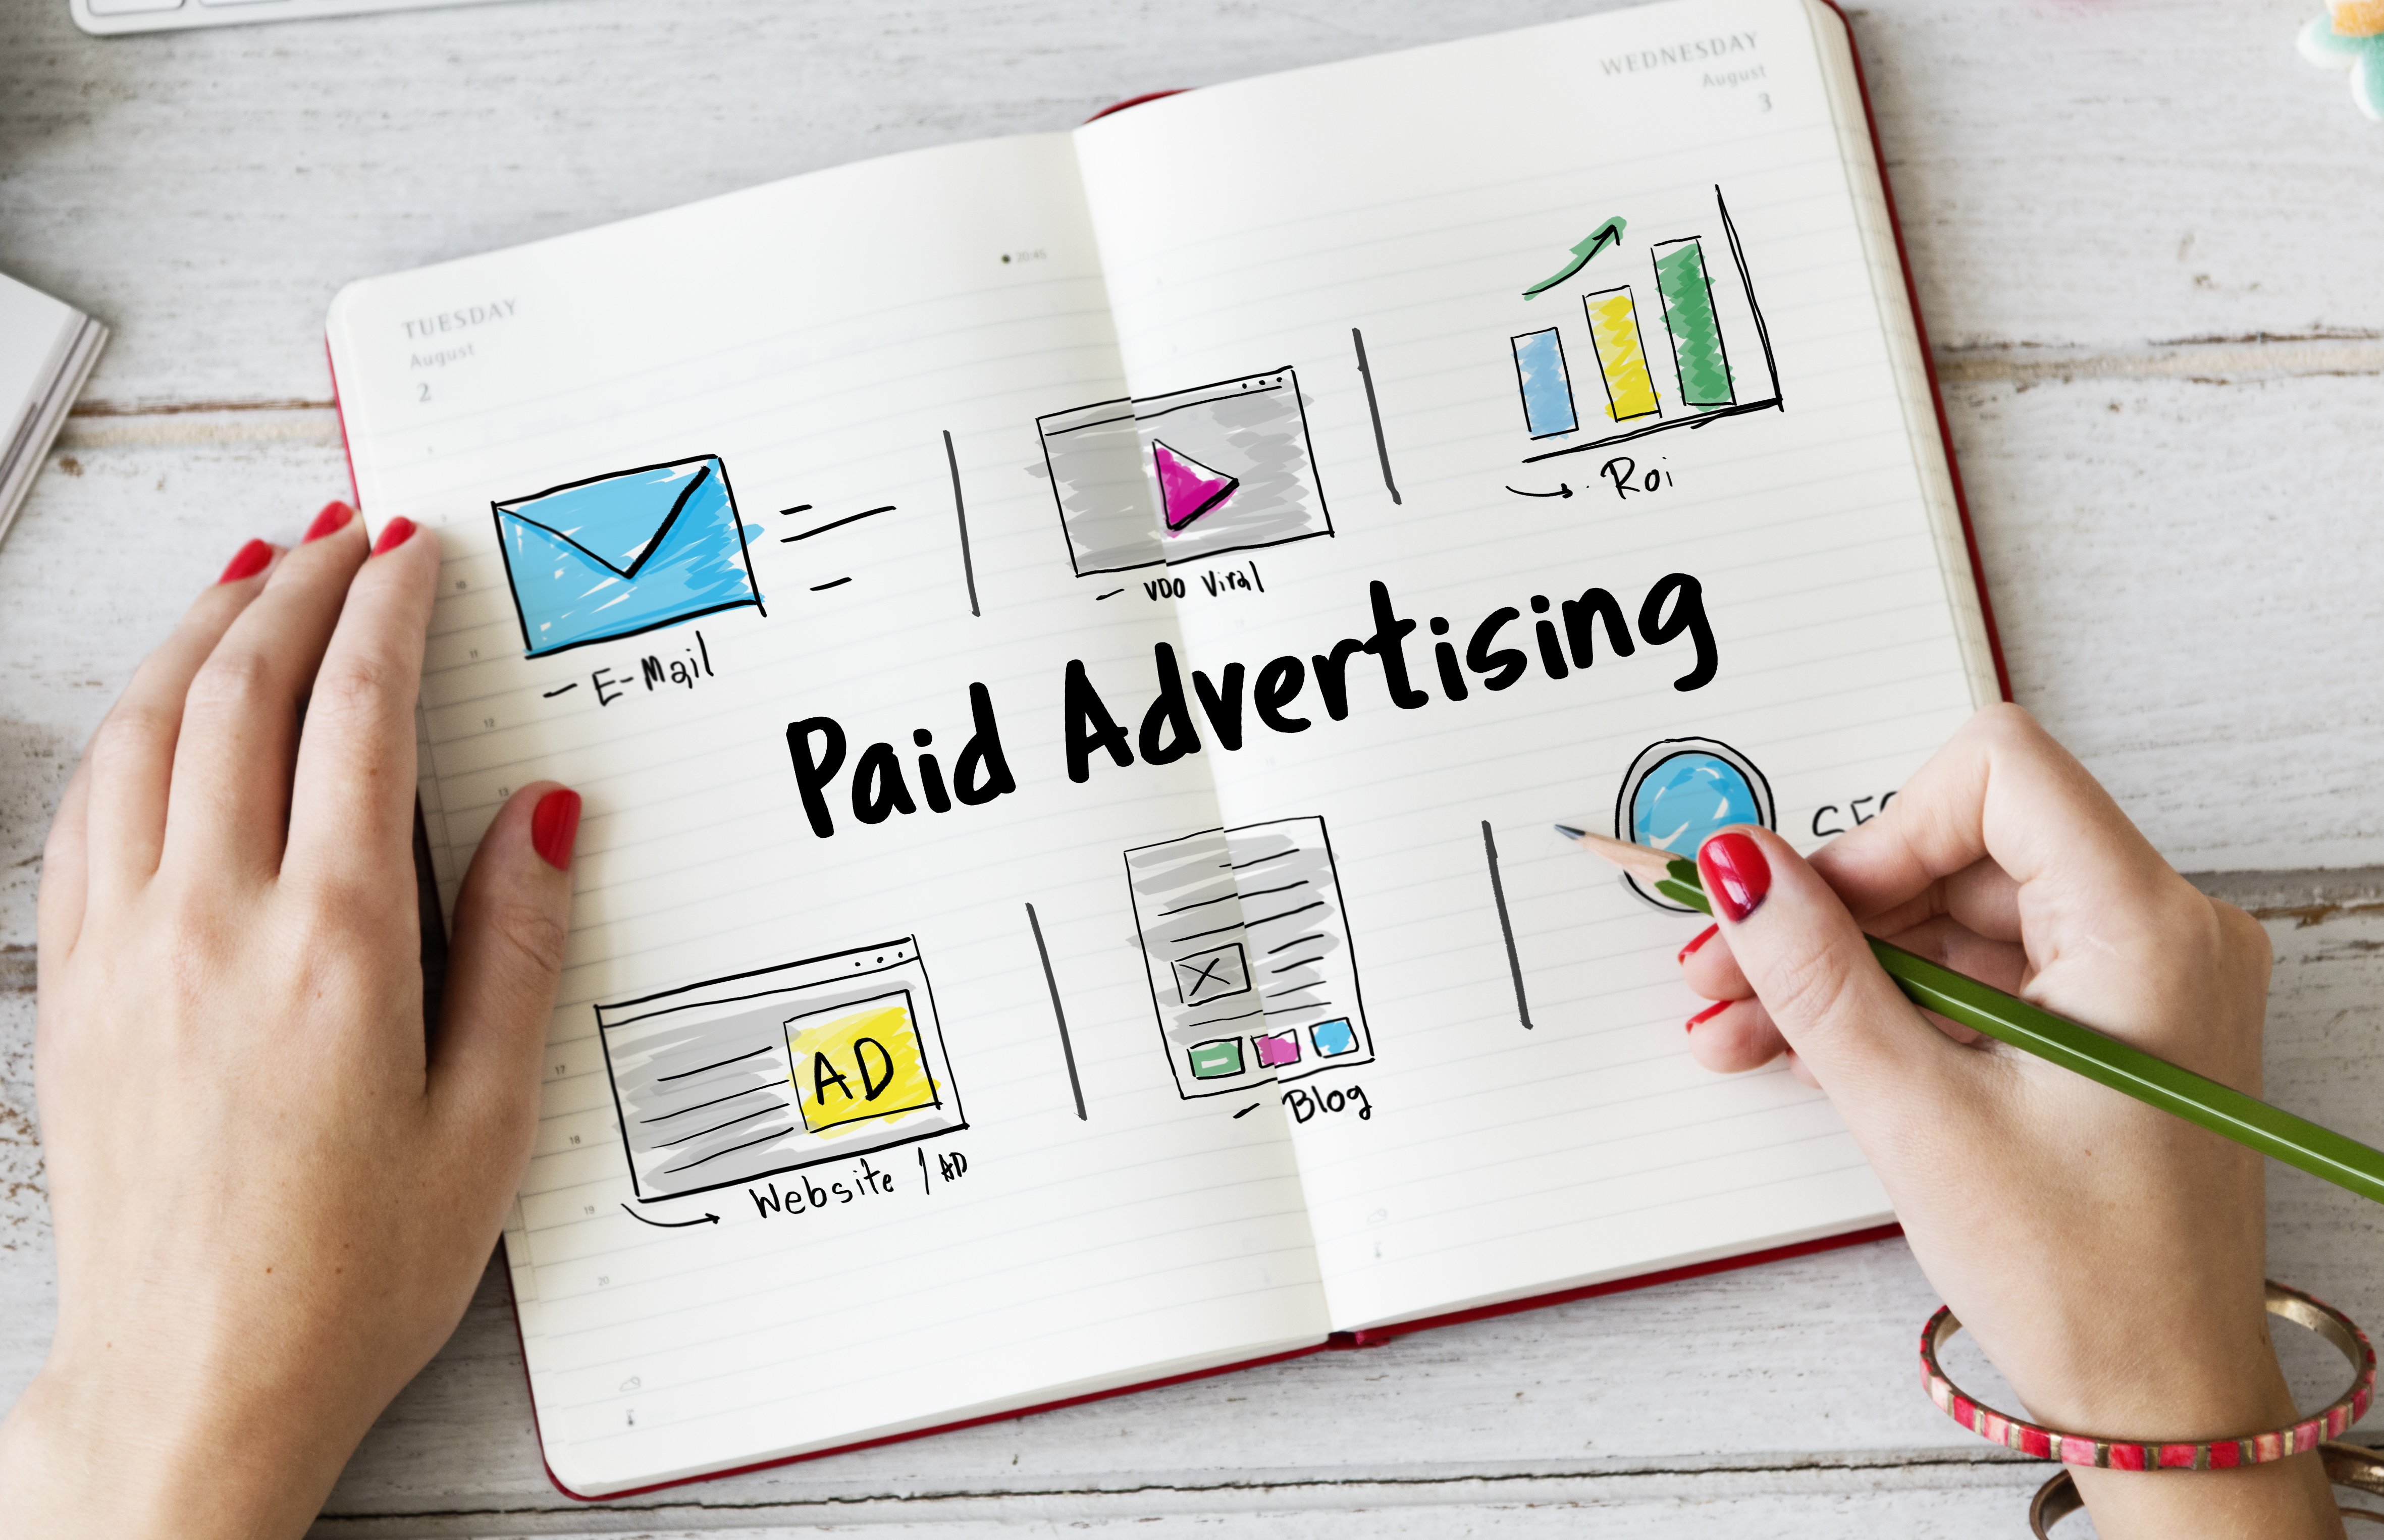 Paid advertising - Quảng cáo trả tiền